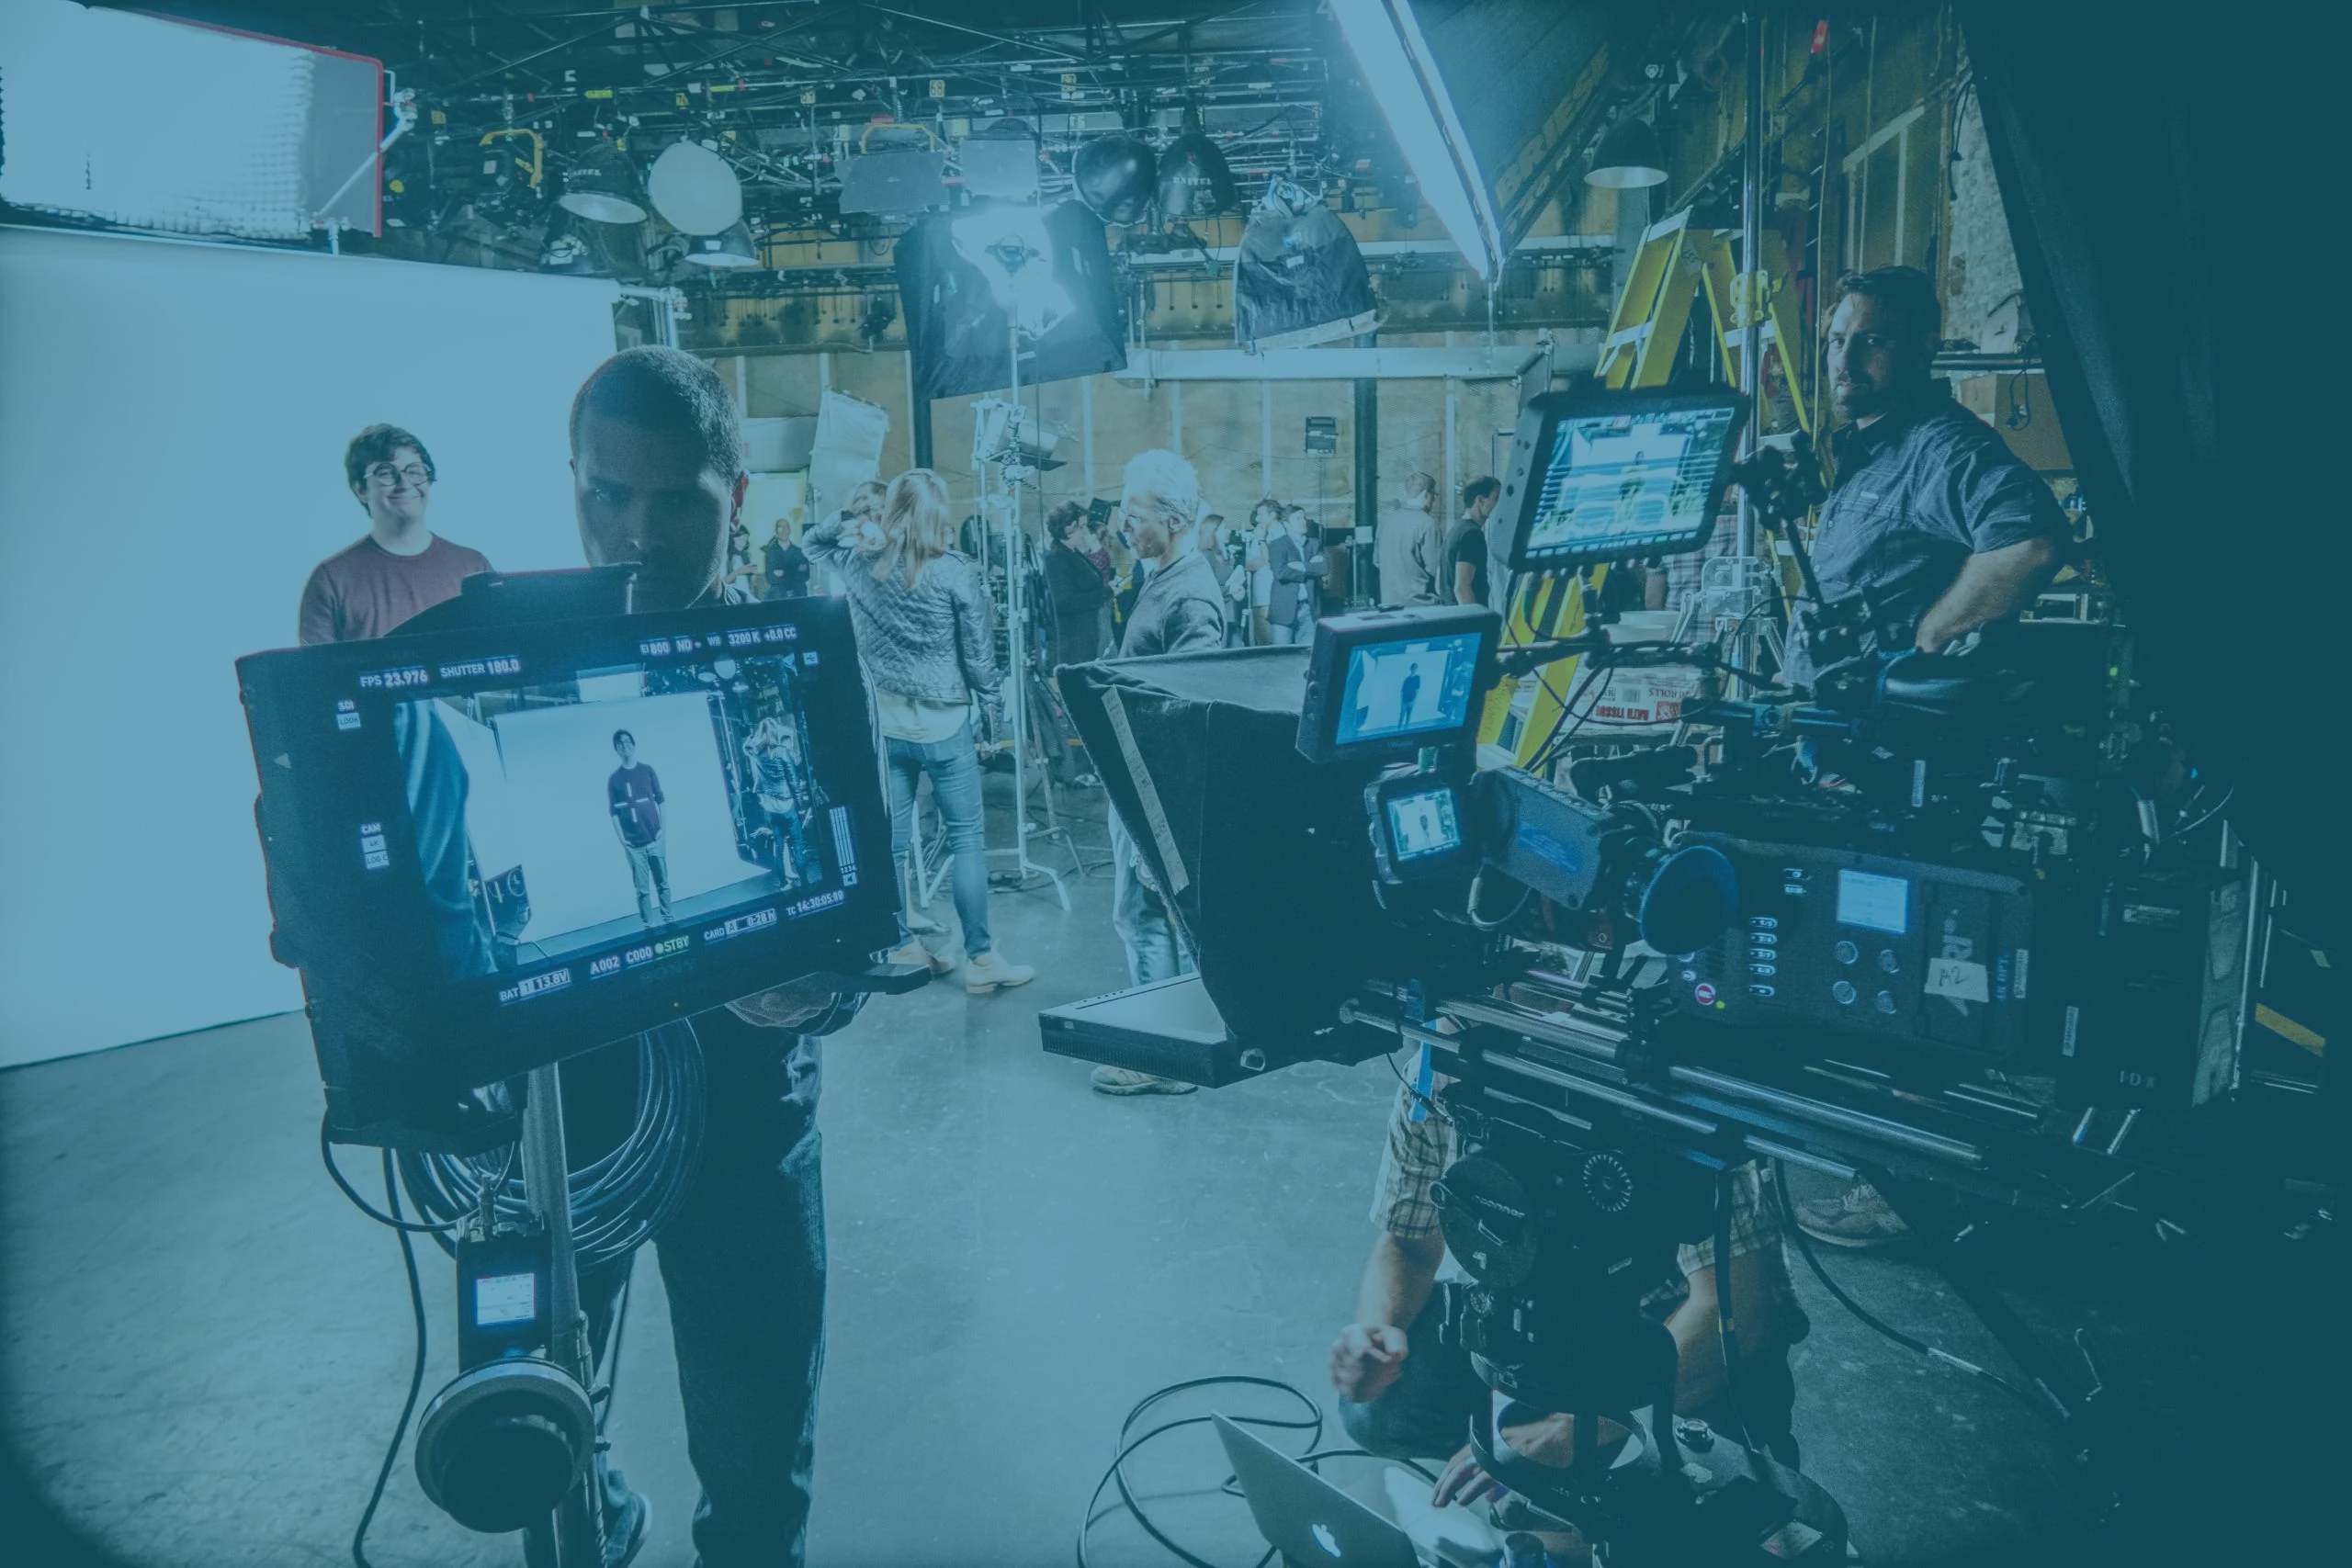 Filmproduktion München – Lanizmedia, Ihr Partner für exzellente Videoproduktion - Vertrauen Sie auf unsere jahrelange Erfahrung und technische Expertise, um Ihre Visionen in beeindruckende Videos zu verwandeln.